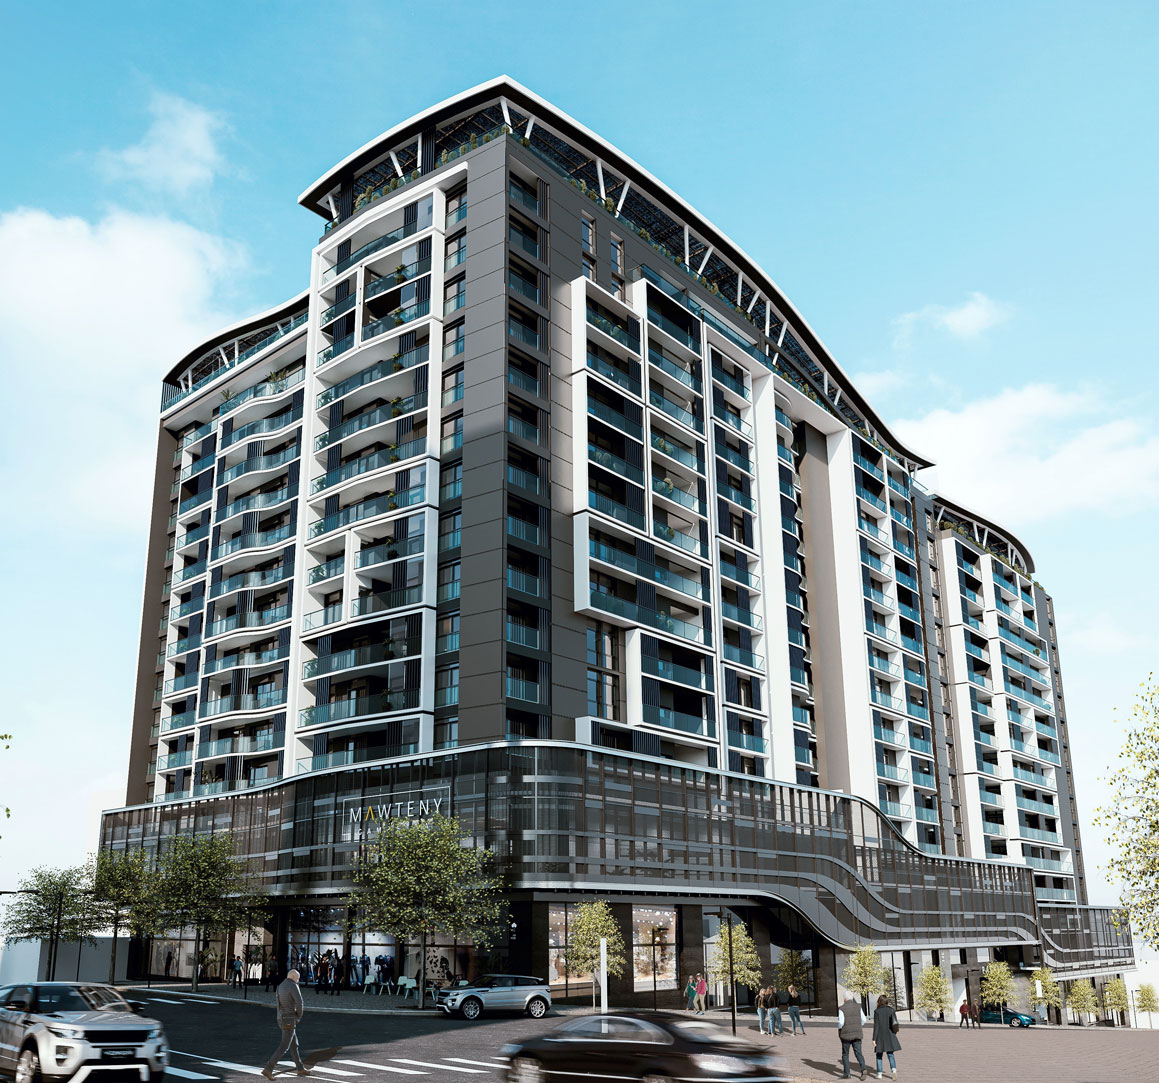 Résidence Mawteny Gambetta Oran Algérie, des appartements haut standing F3, F4, F5 et Penthouse à partir de 125 m2.